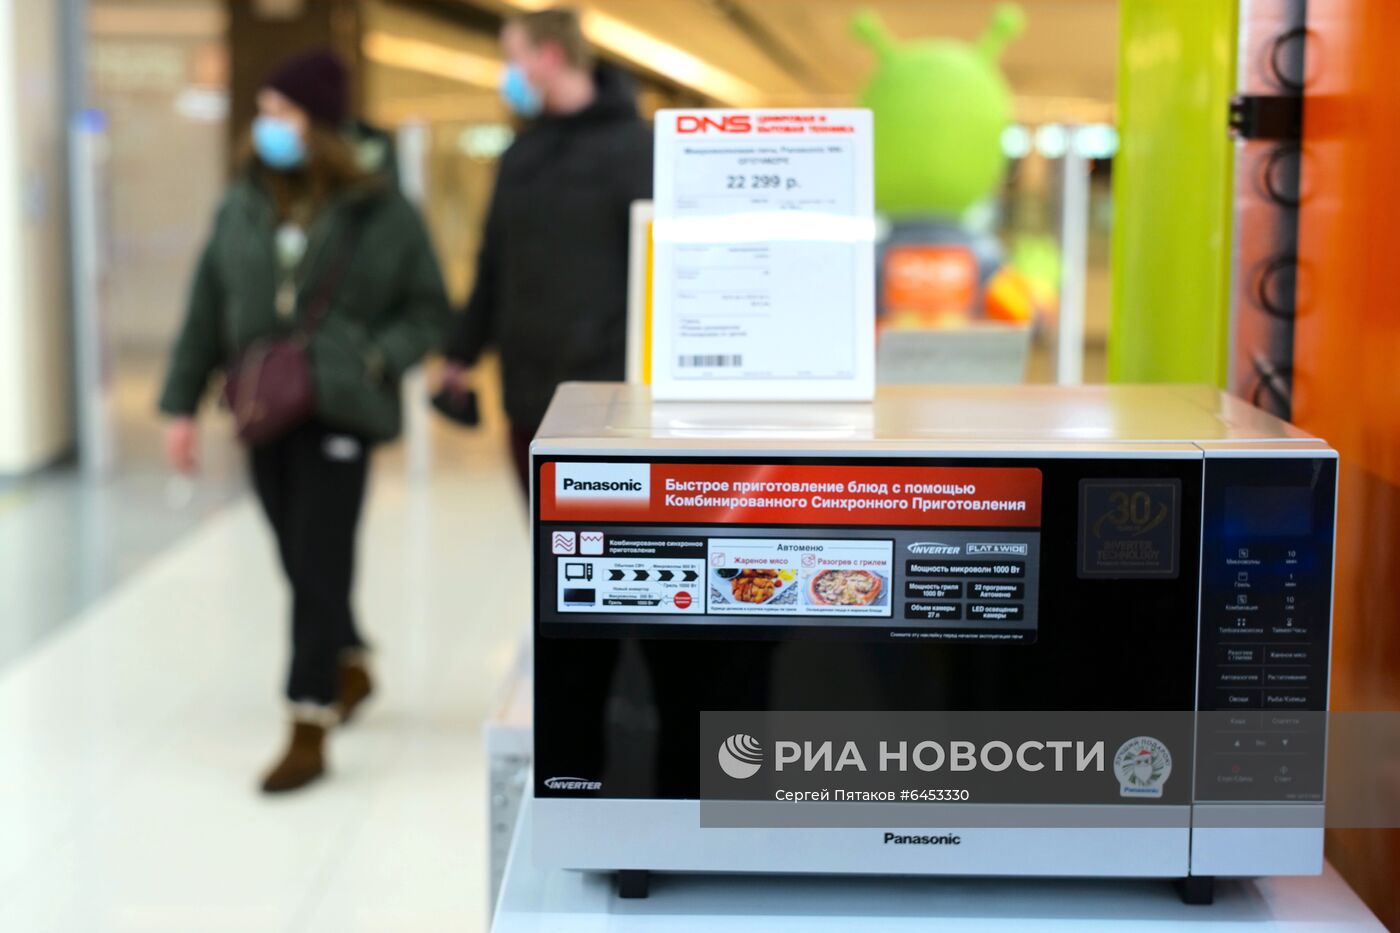 Продажа бытовой техники в магазинах Москвы